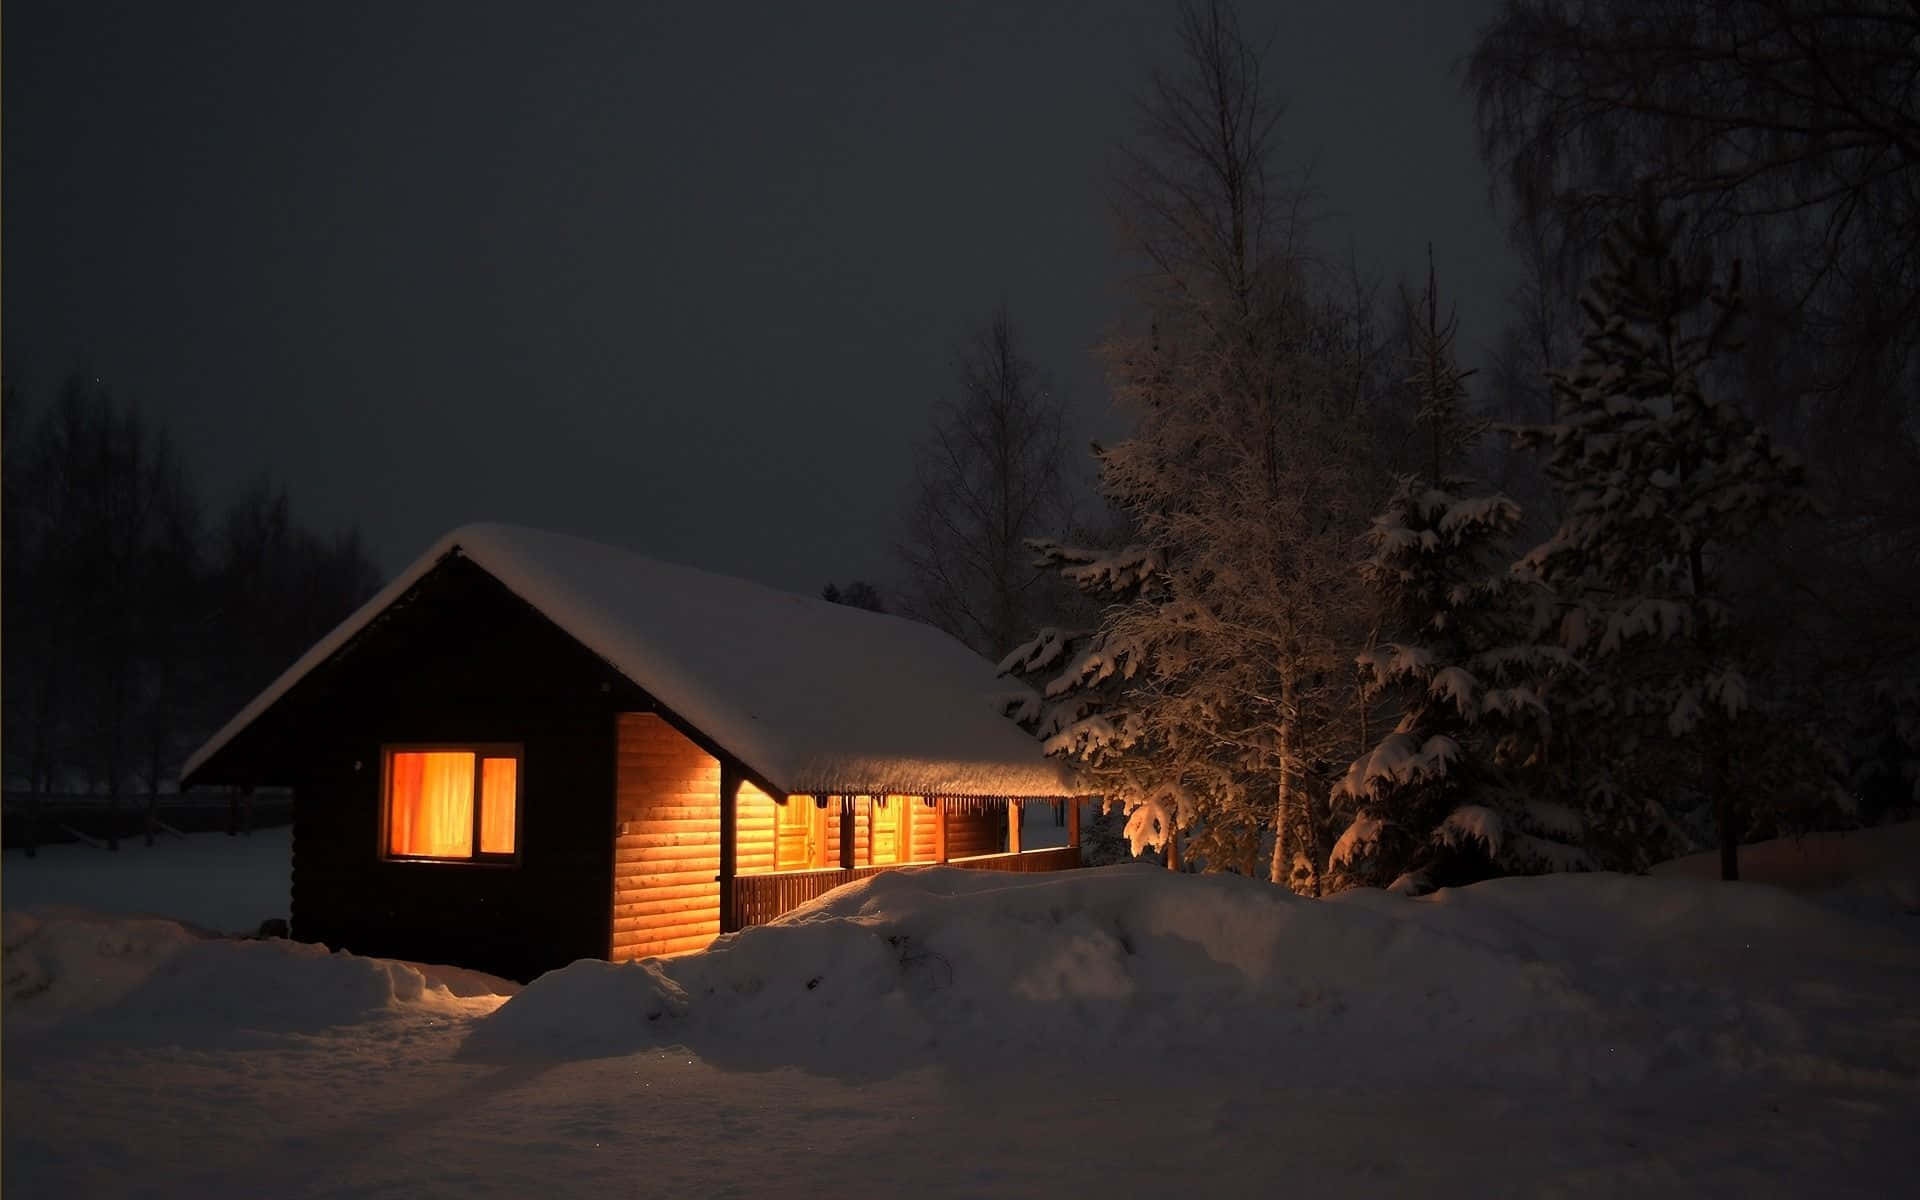 En lille hytte oplyst om natten i sneen Wallpaper